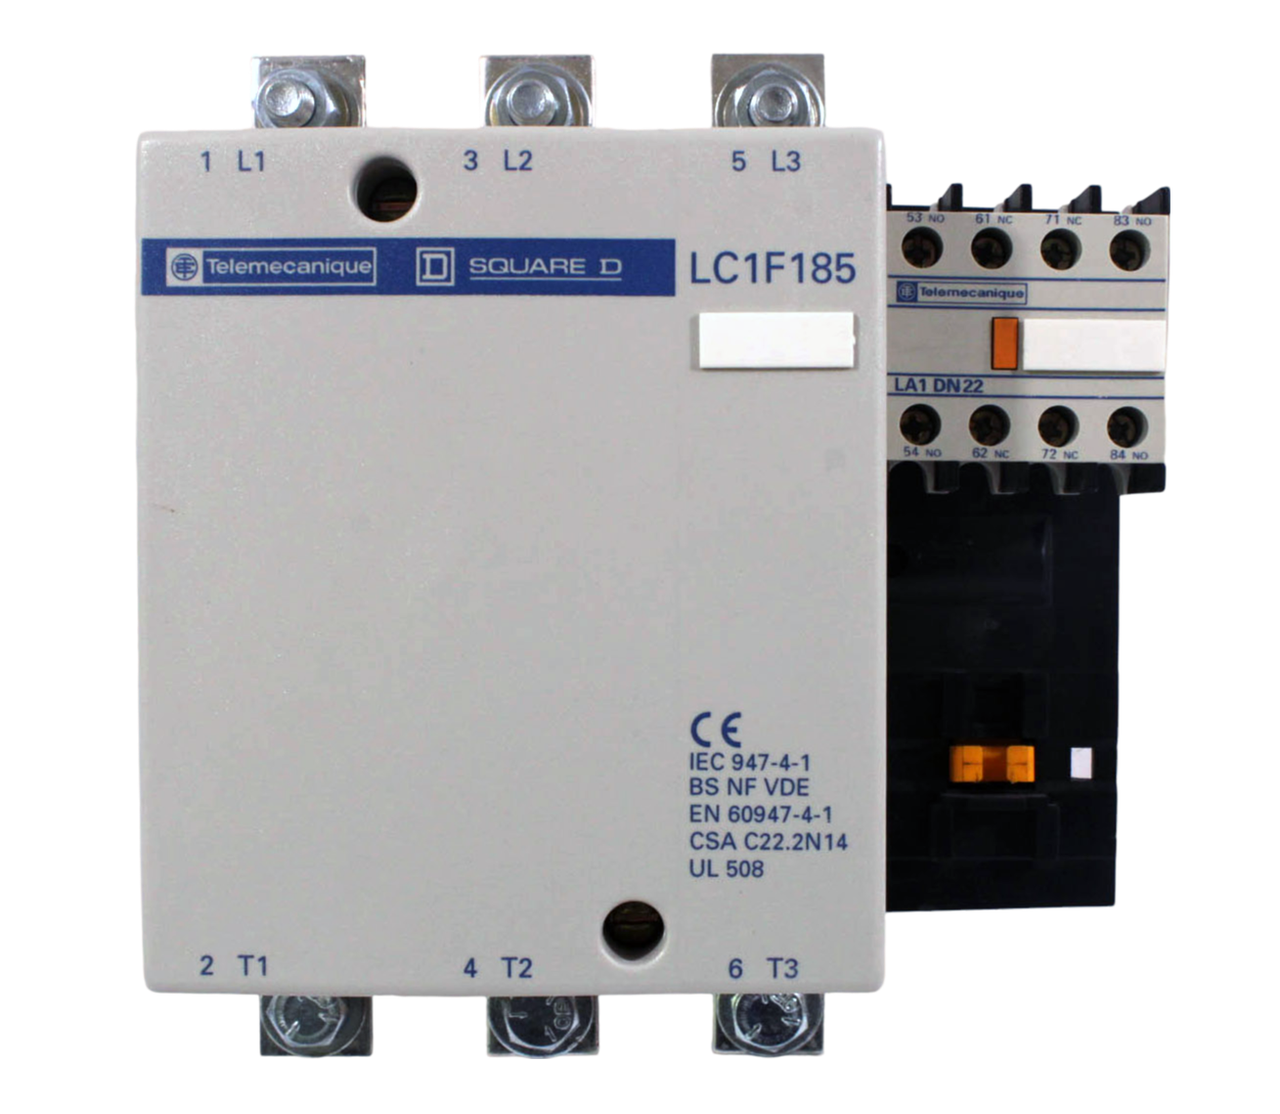 Telemecanique LC1F185 Contactor 200A 600V 3PH W/LA1DN22 Starter and LX1FG380 Coil Square D